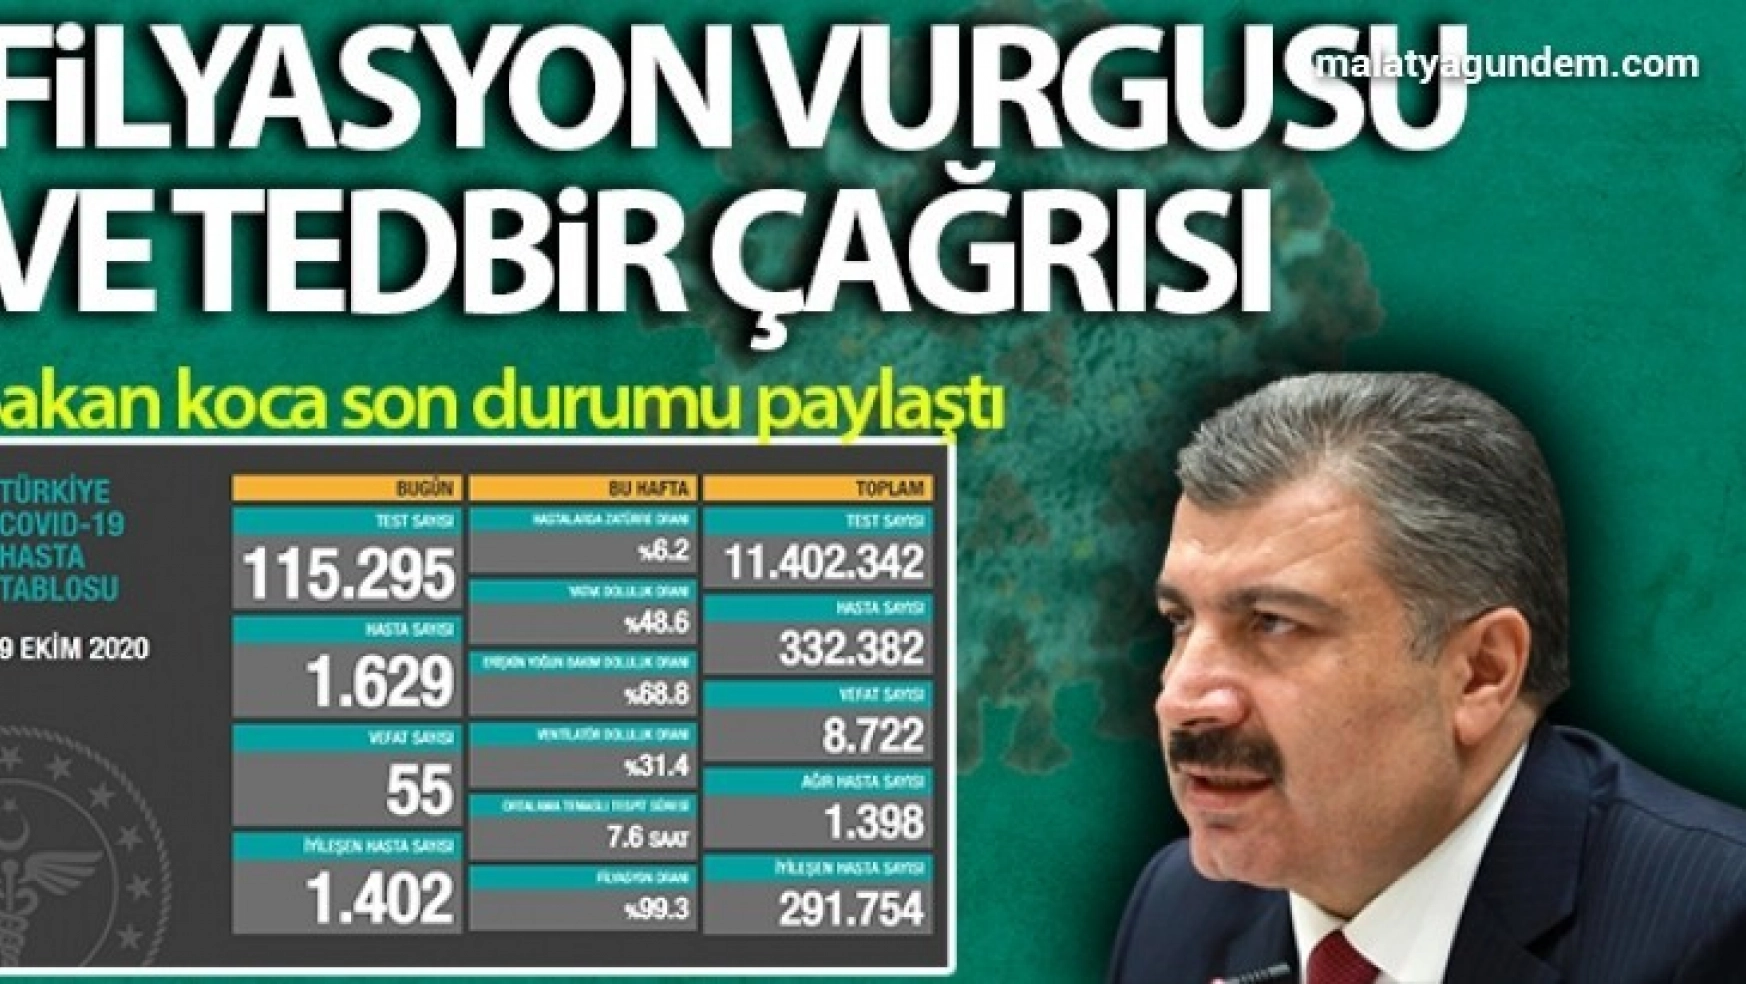 Türkiye'de son 24 saatte 1629 kişiye koronavirüs tanısı konuldu, 55 kişi hayatını kaybetti